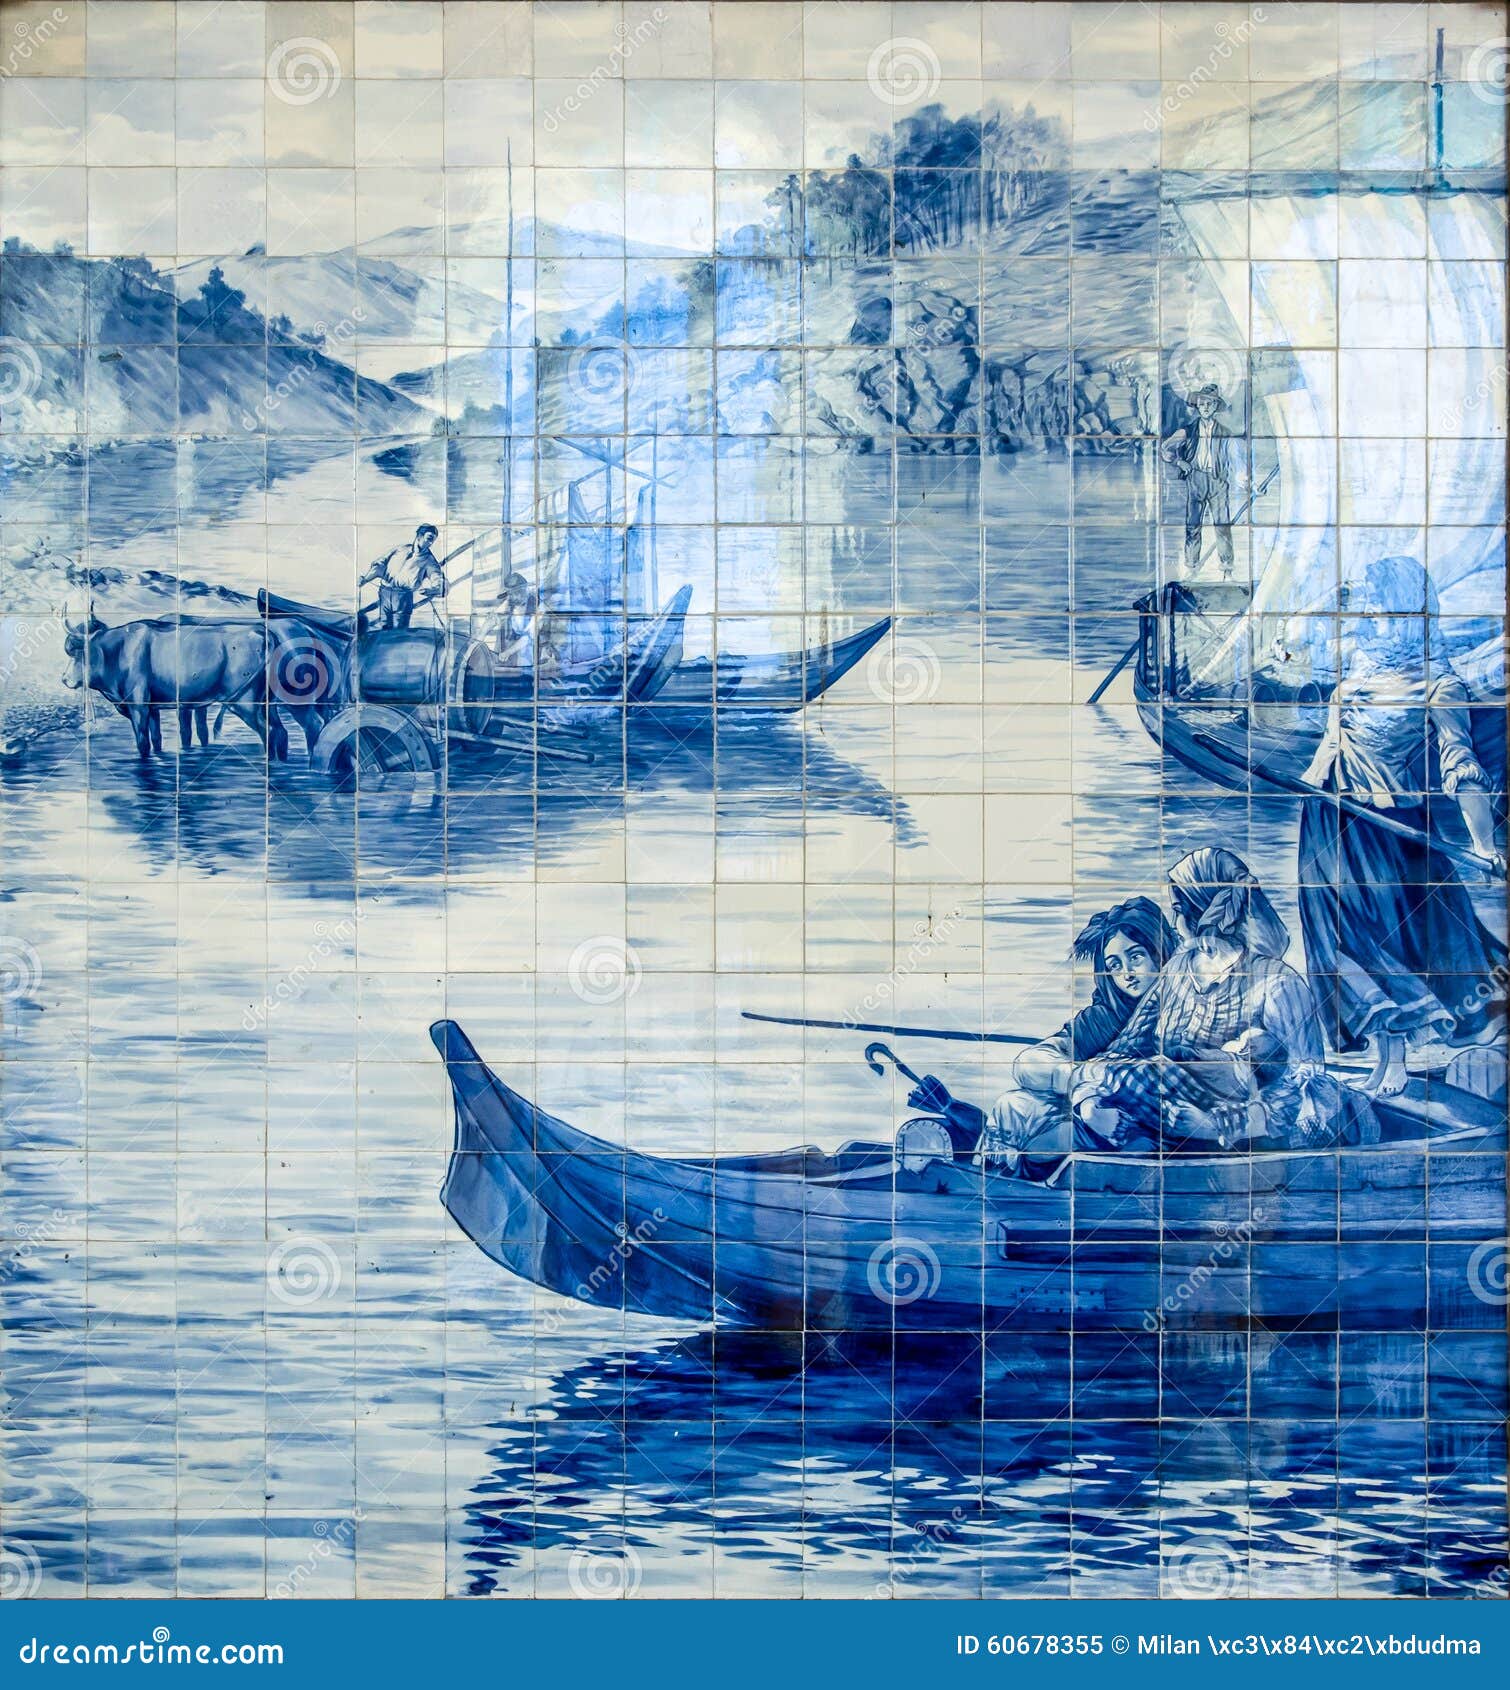 azulejo at sÃÂ£o bento railway station, porto, portugal